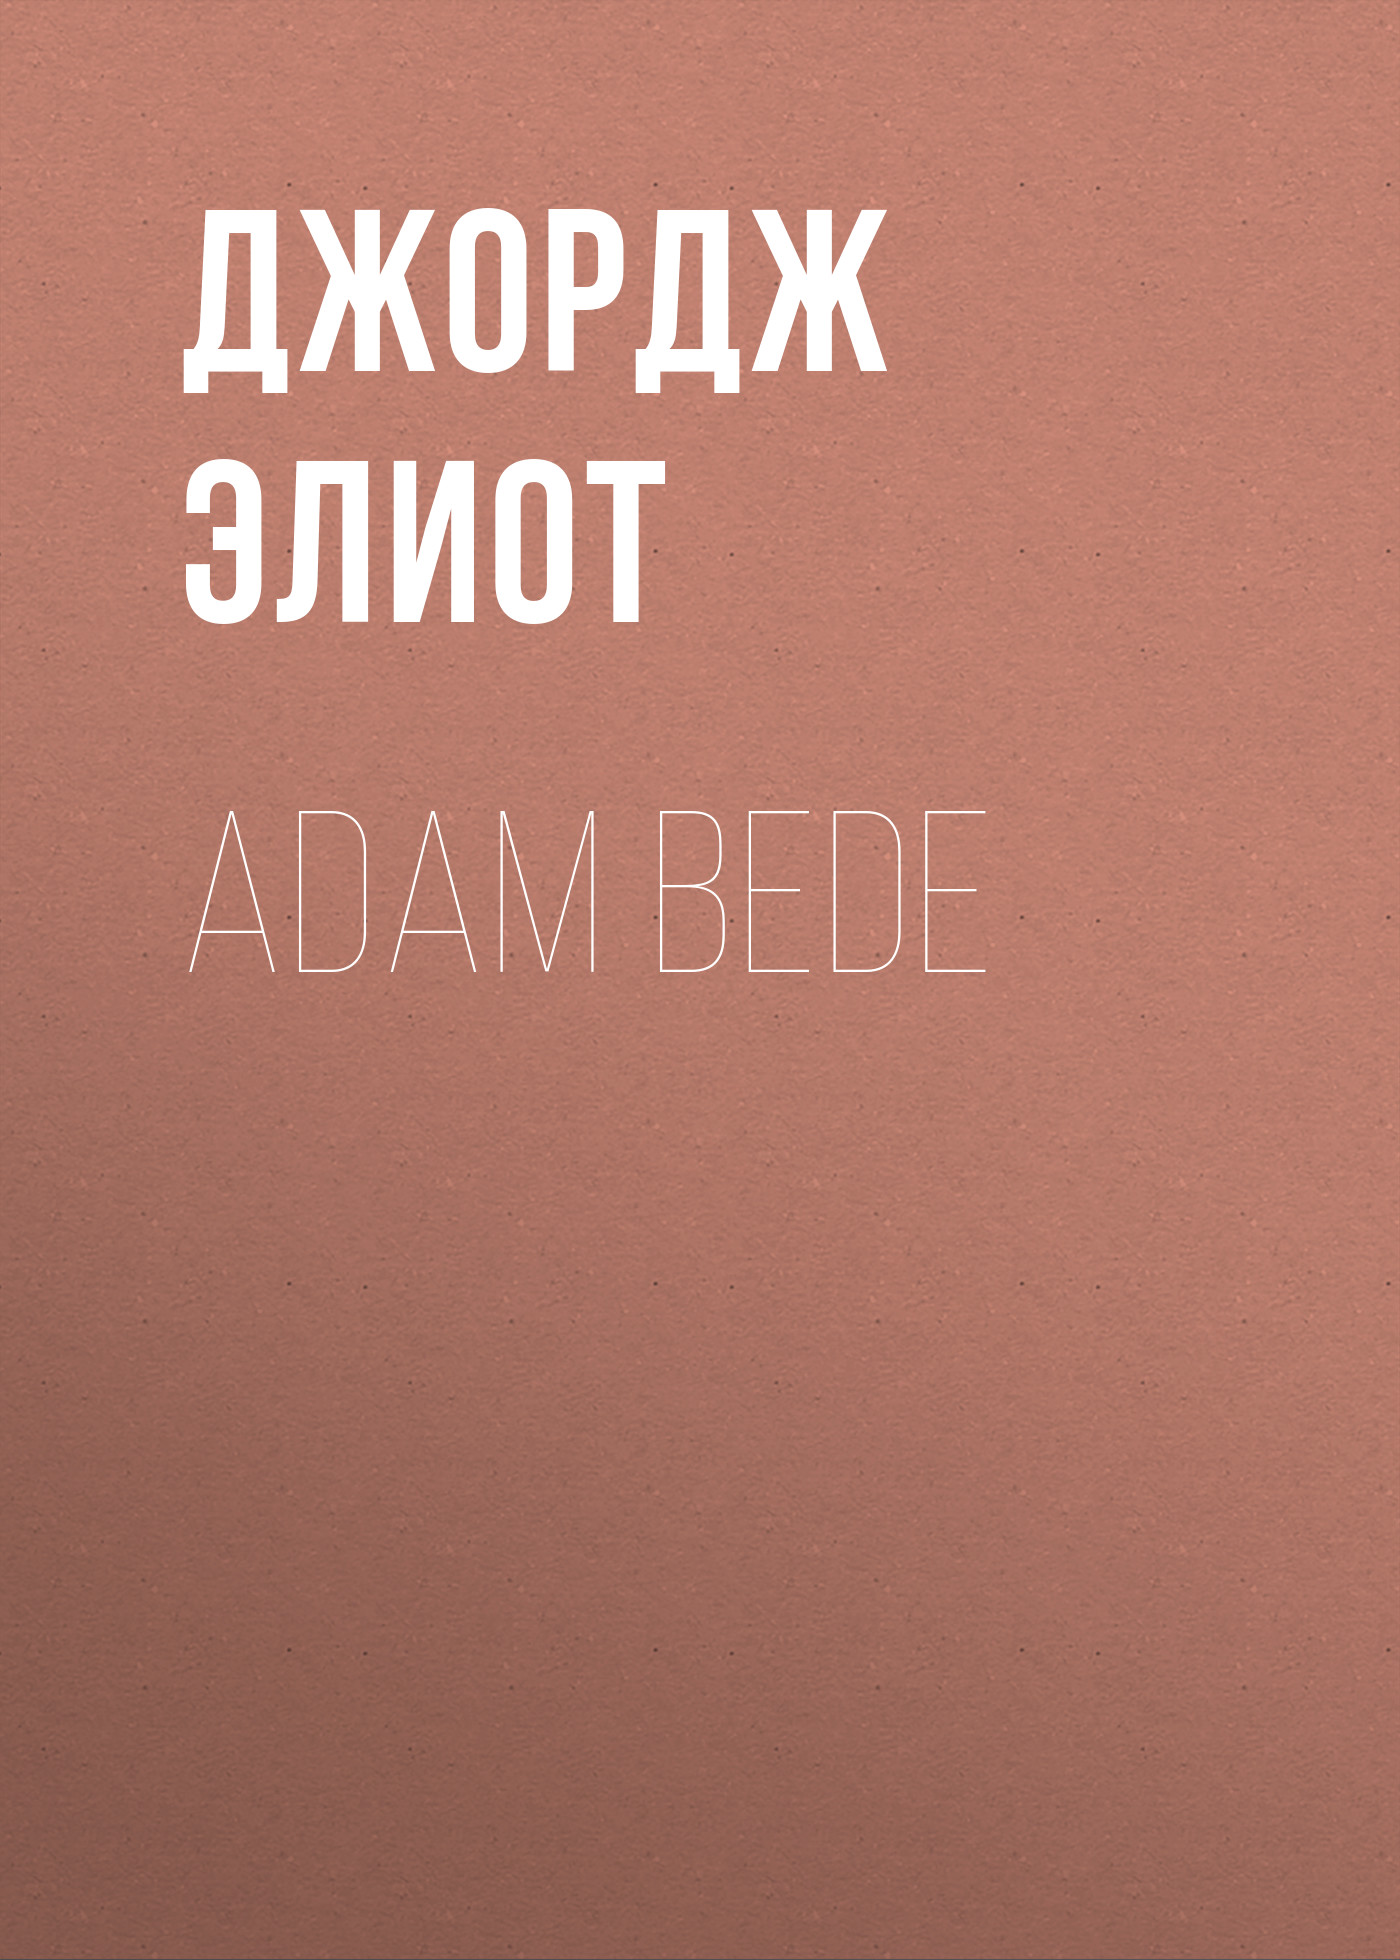 Книга Adam Bede из серии , созданная Джордж Элиот, может относится к жанру Зарубежная образовательная литература, Педагогика, Литература 19 века, Воспитание детей. Стоимость электронной книги Adam Bede с идентификатором 34841886 составляет 0 руб.